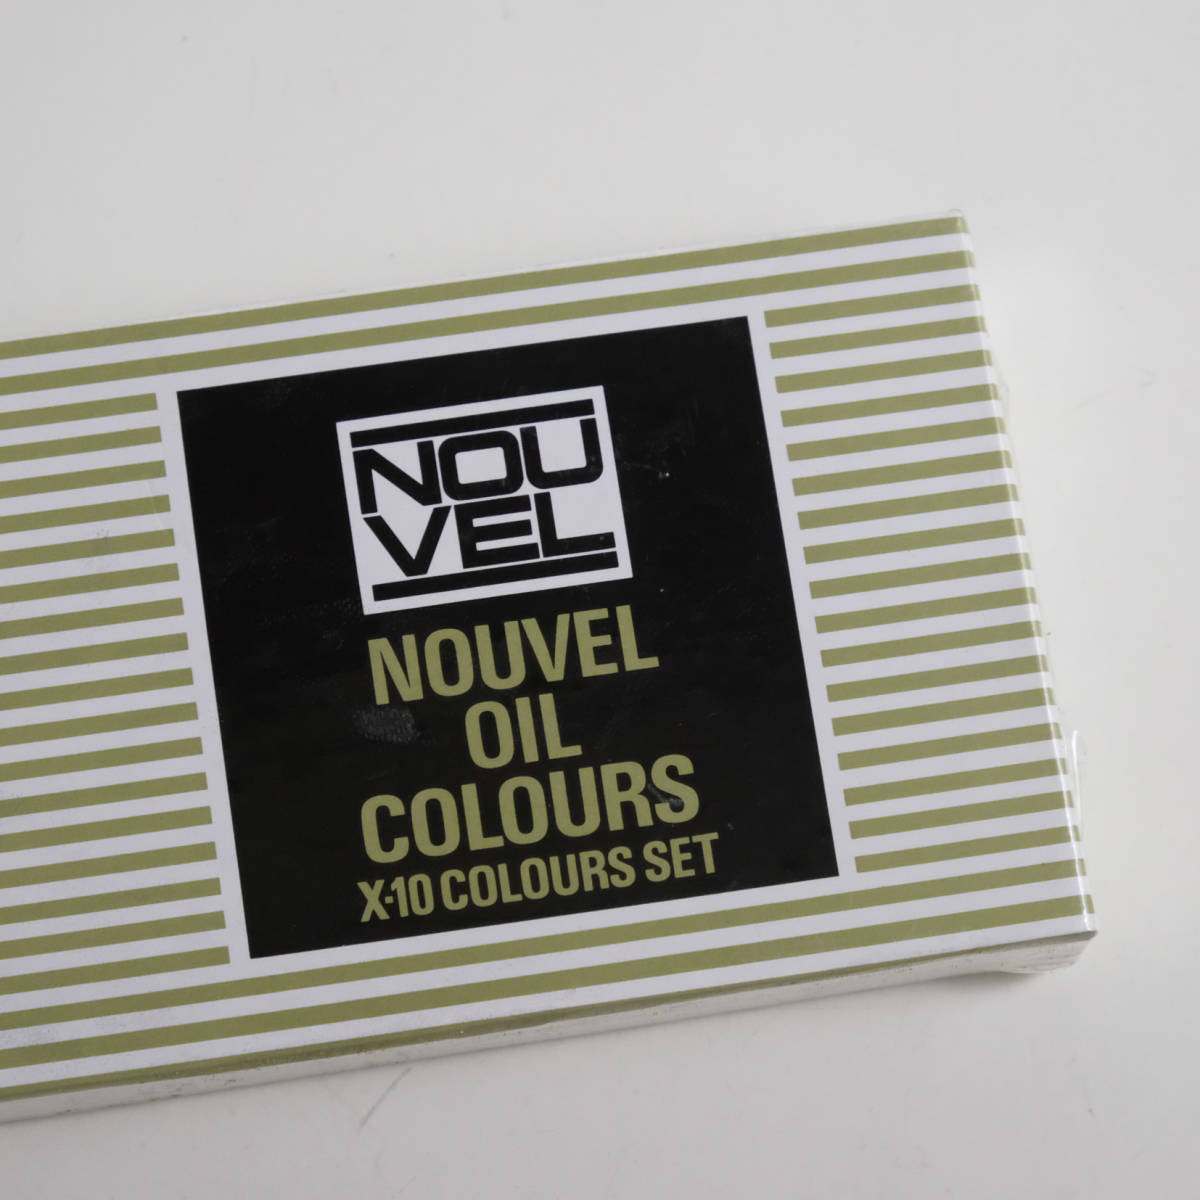  нераспечатанный масляные краски NOUVEL OIL COLOURSn- bell. масляная краска живопись масляными красками X-10